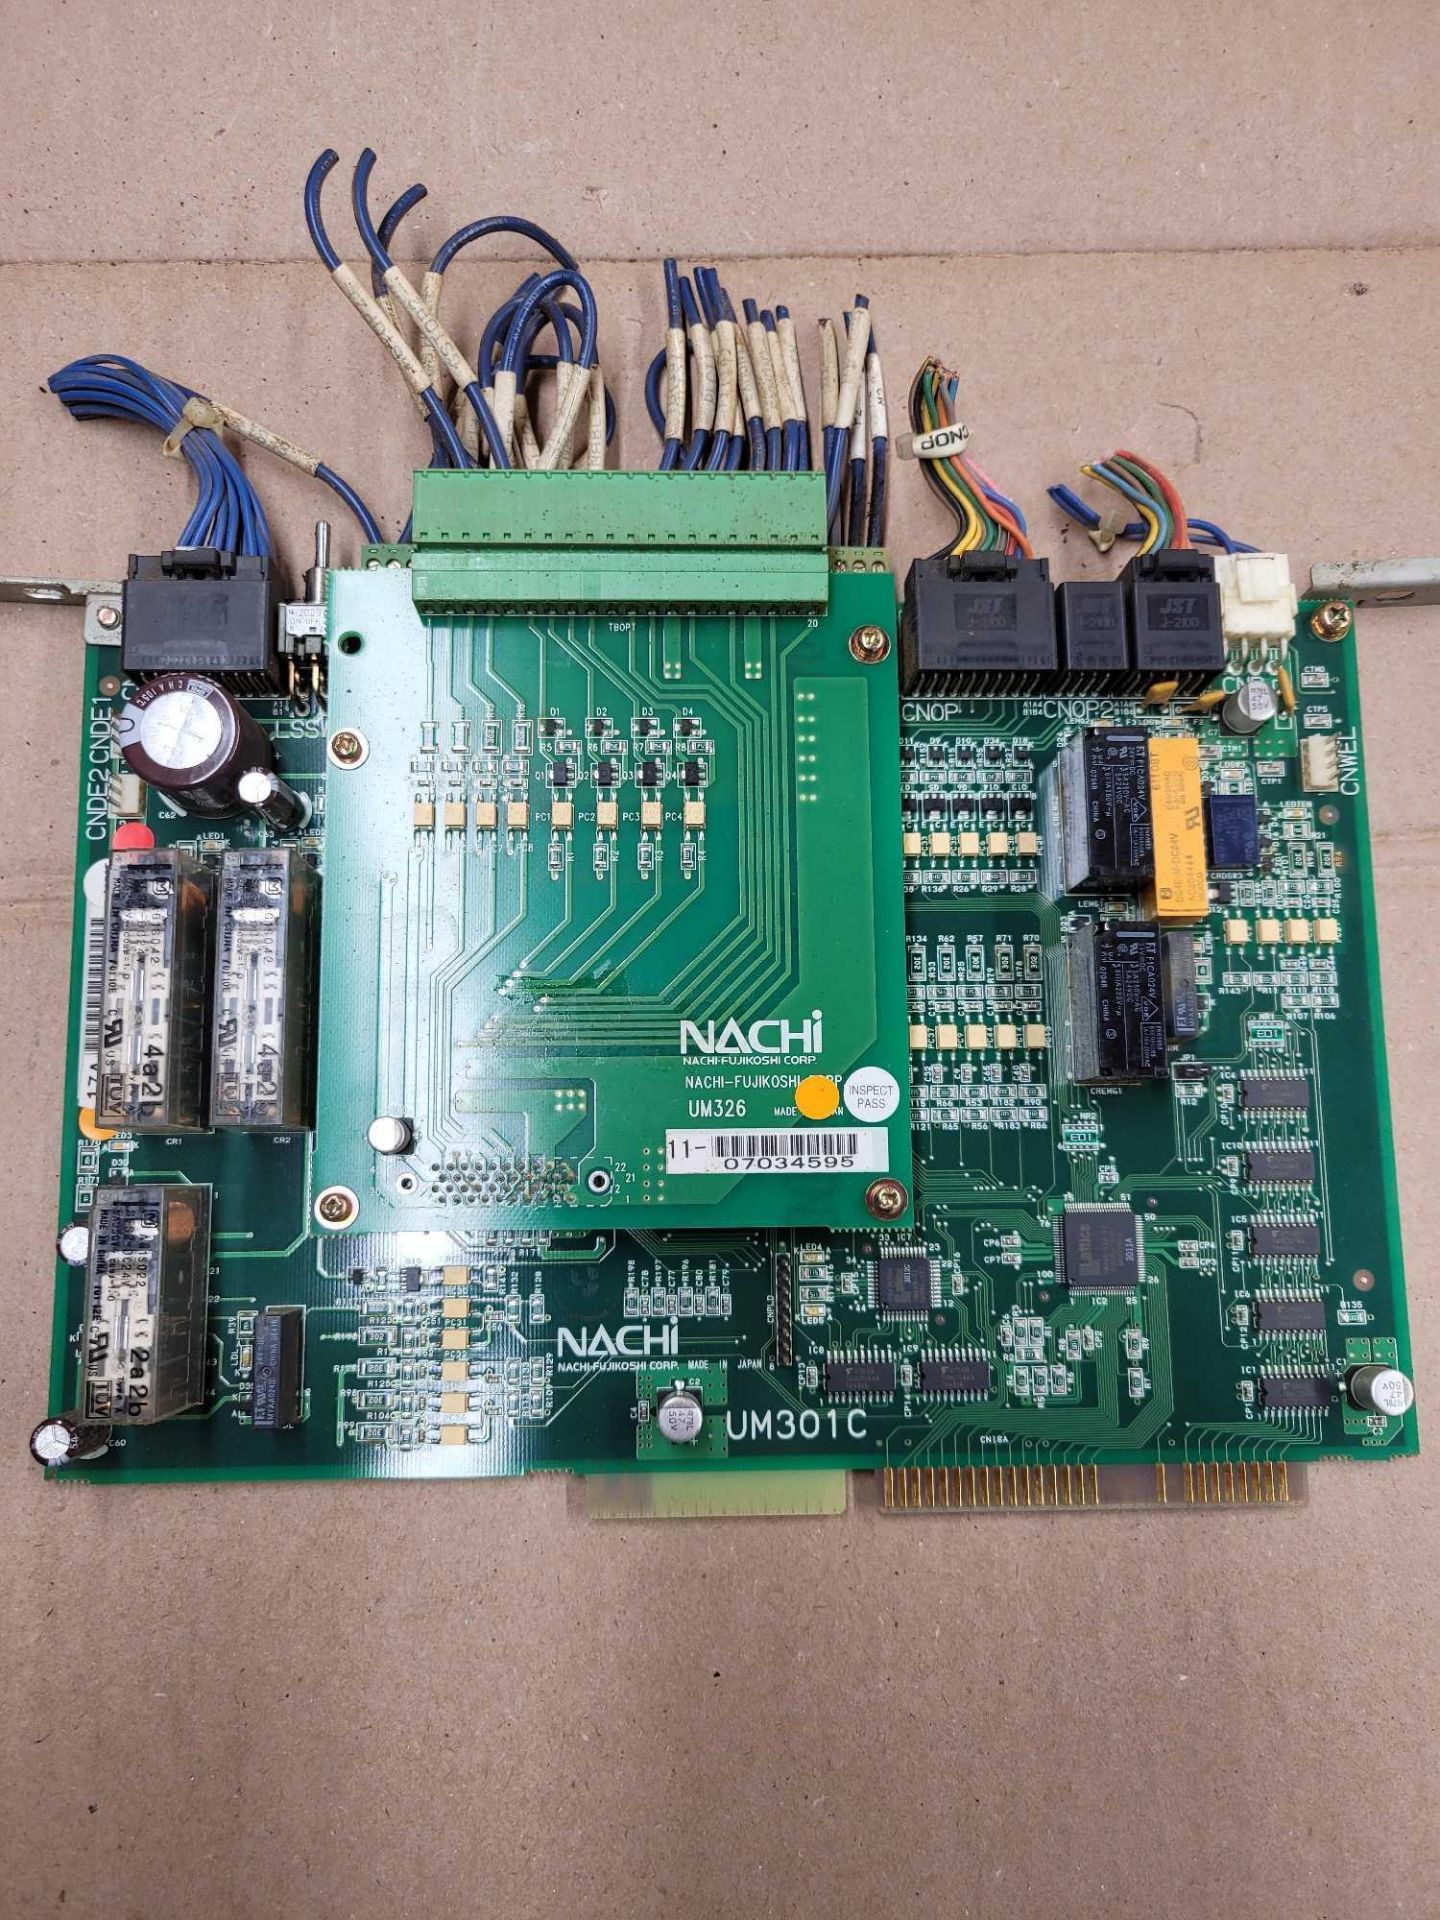 NACHI UM301C with UM326 / PCB Board Card